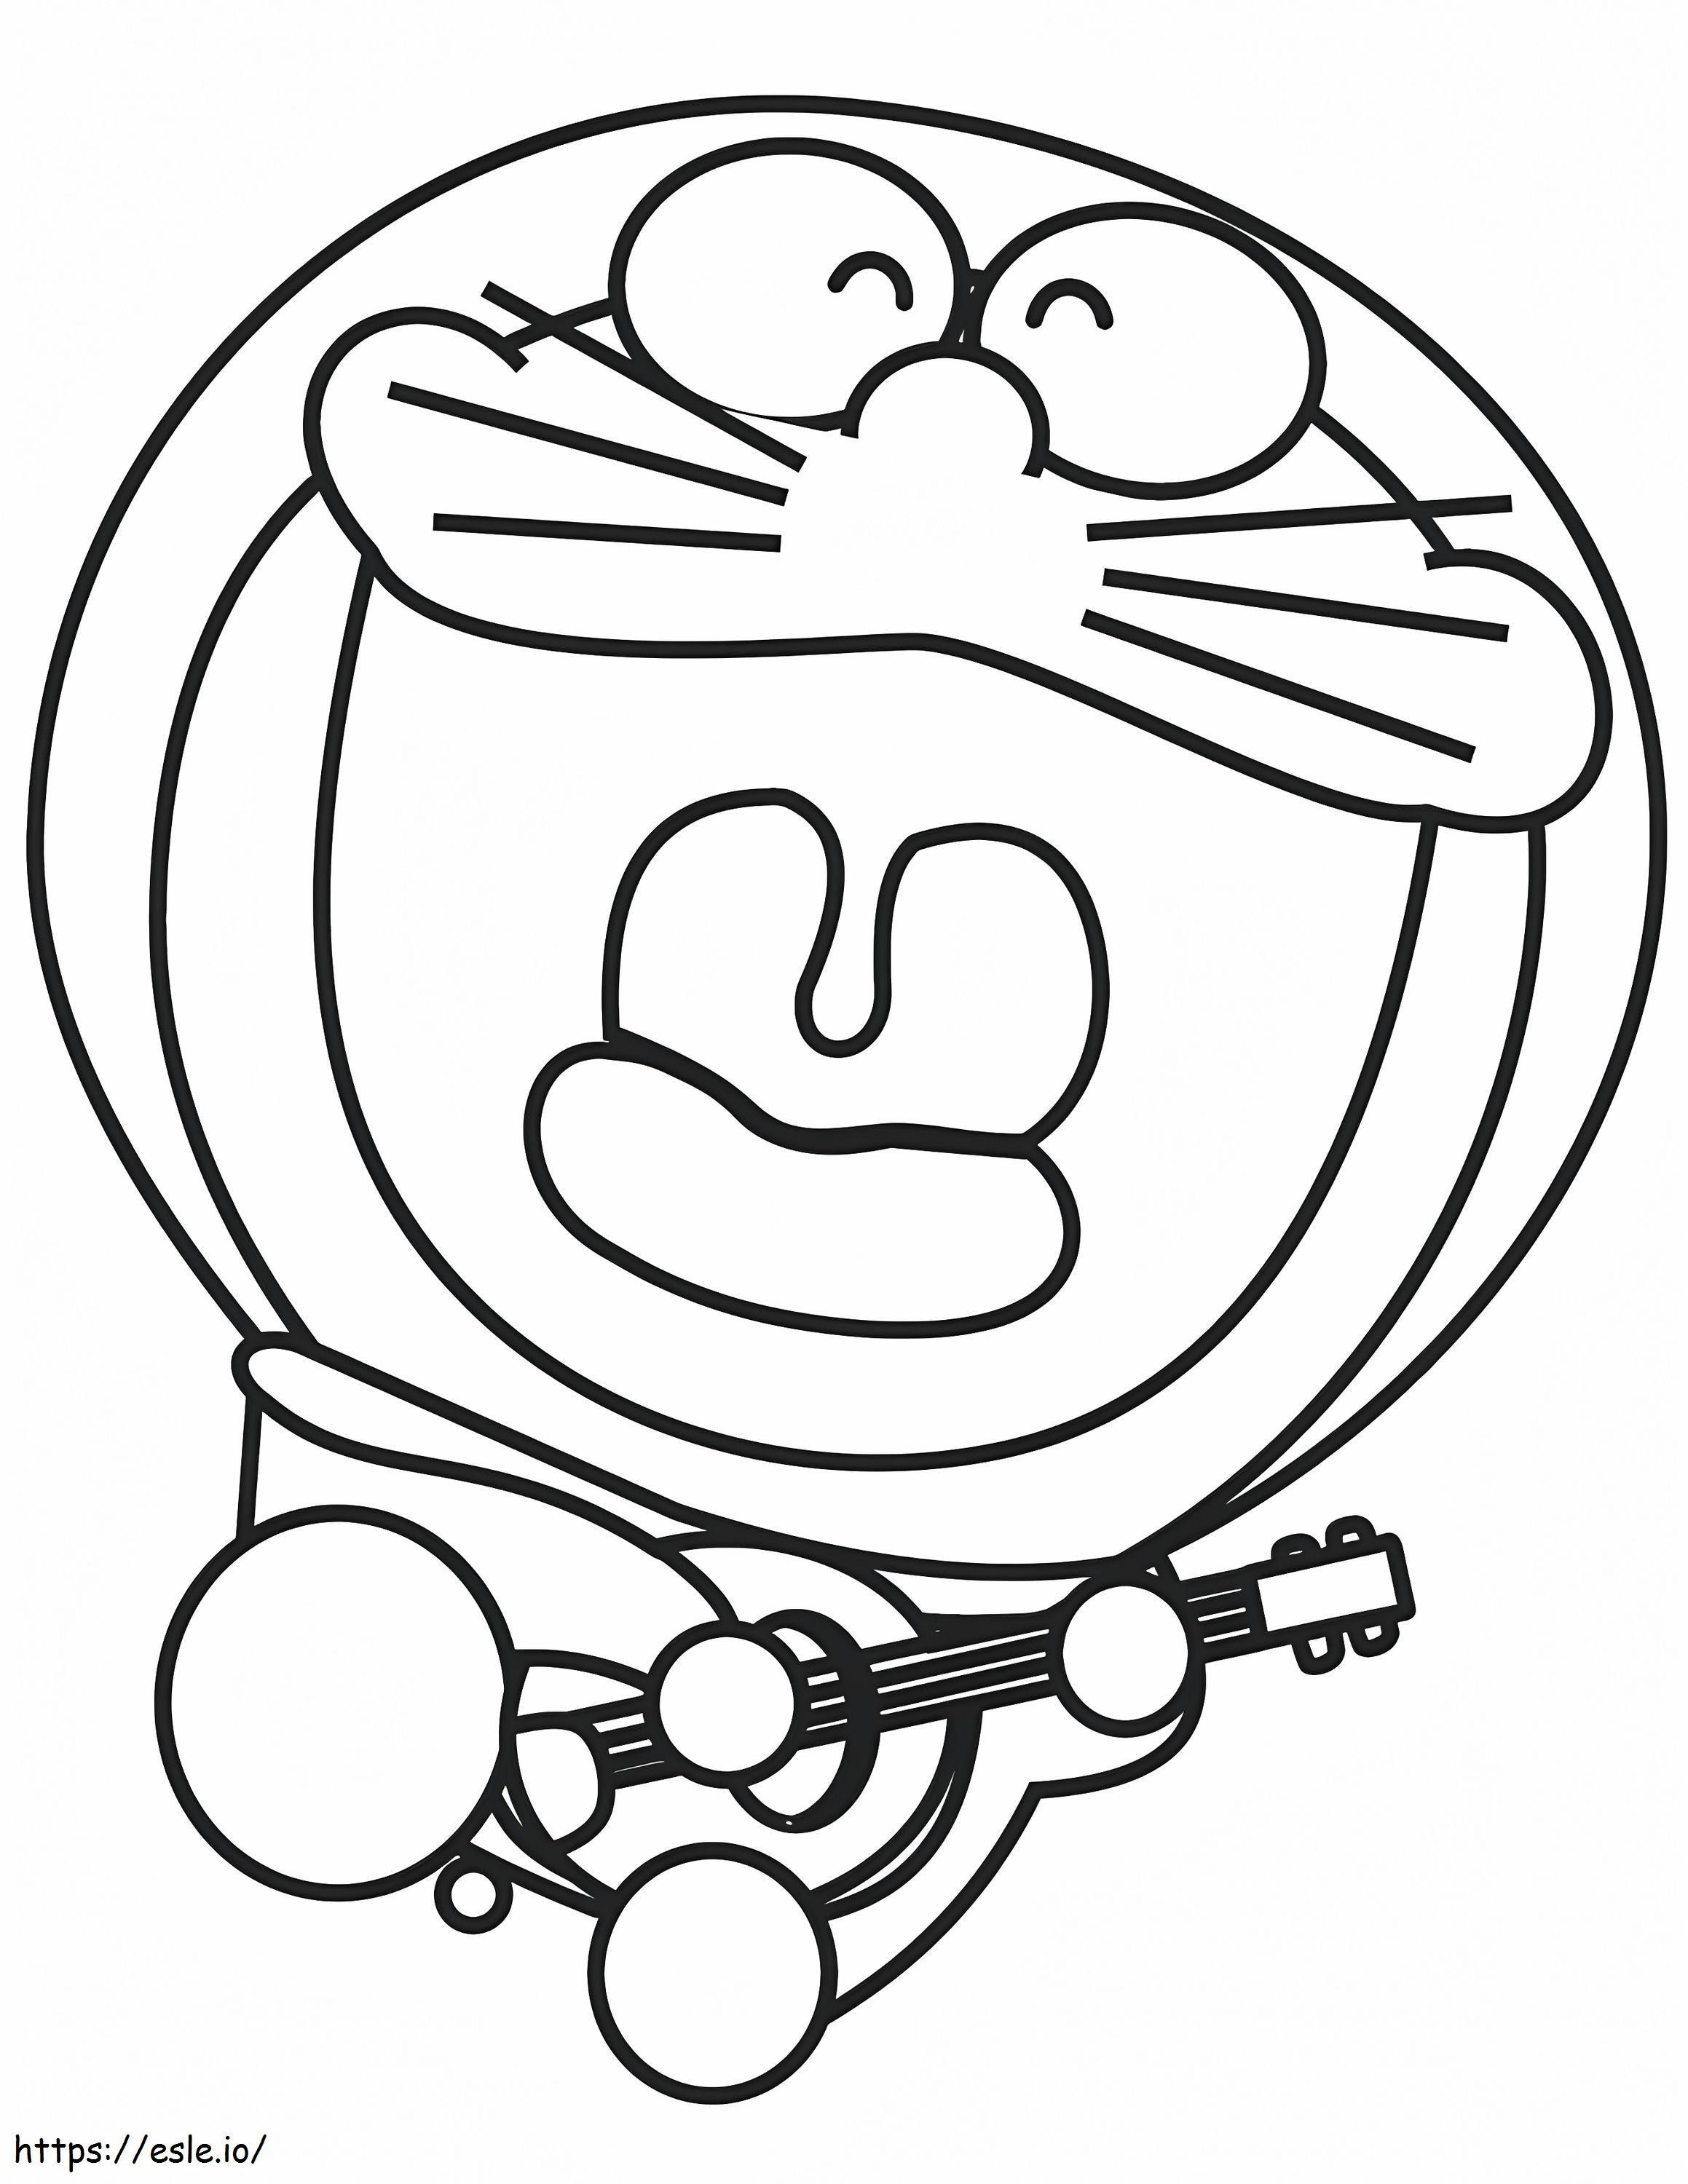 1531276686 Doraemon speelt gitaar A4 kleurplaat kleurplaat